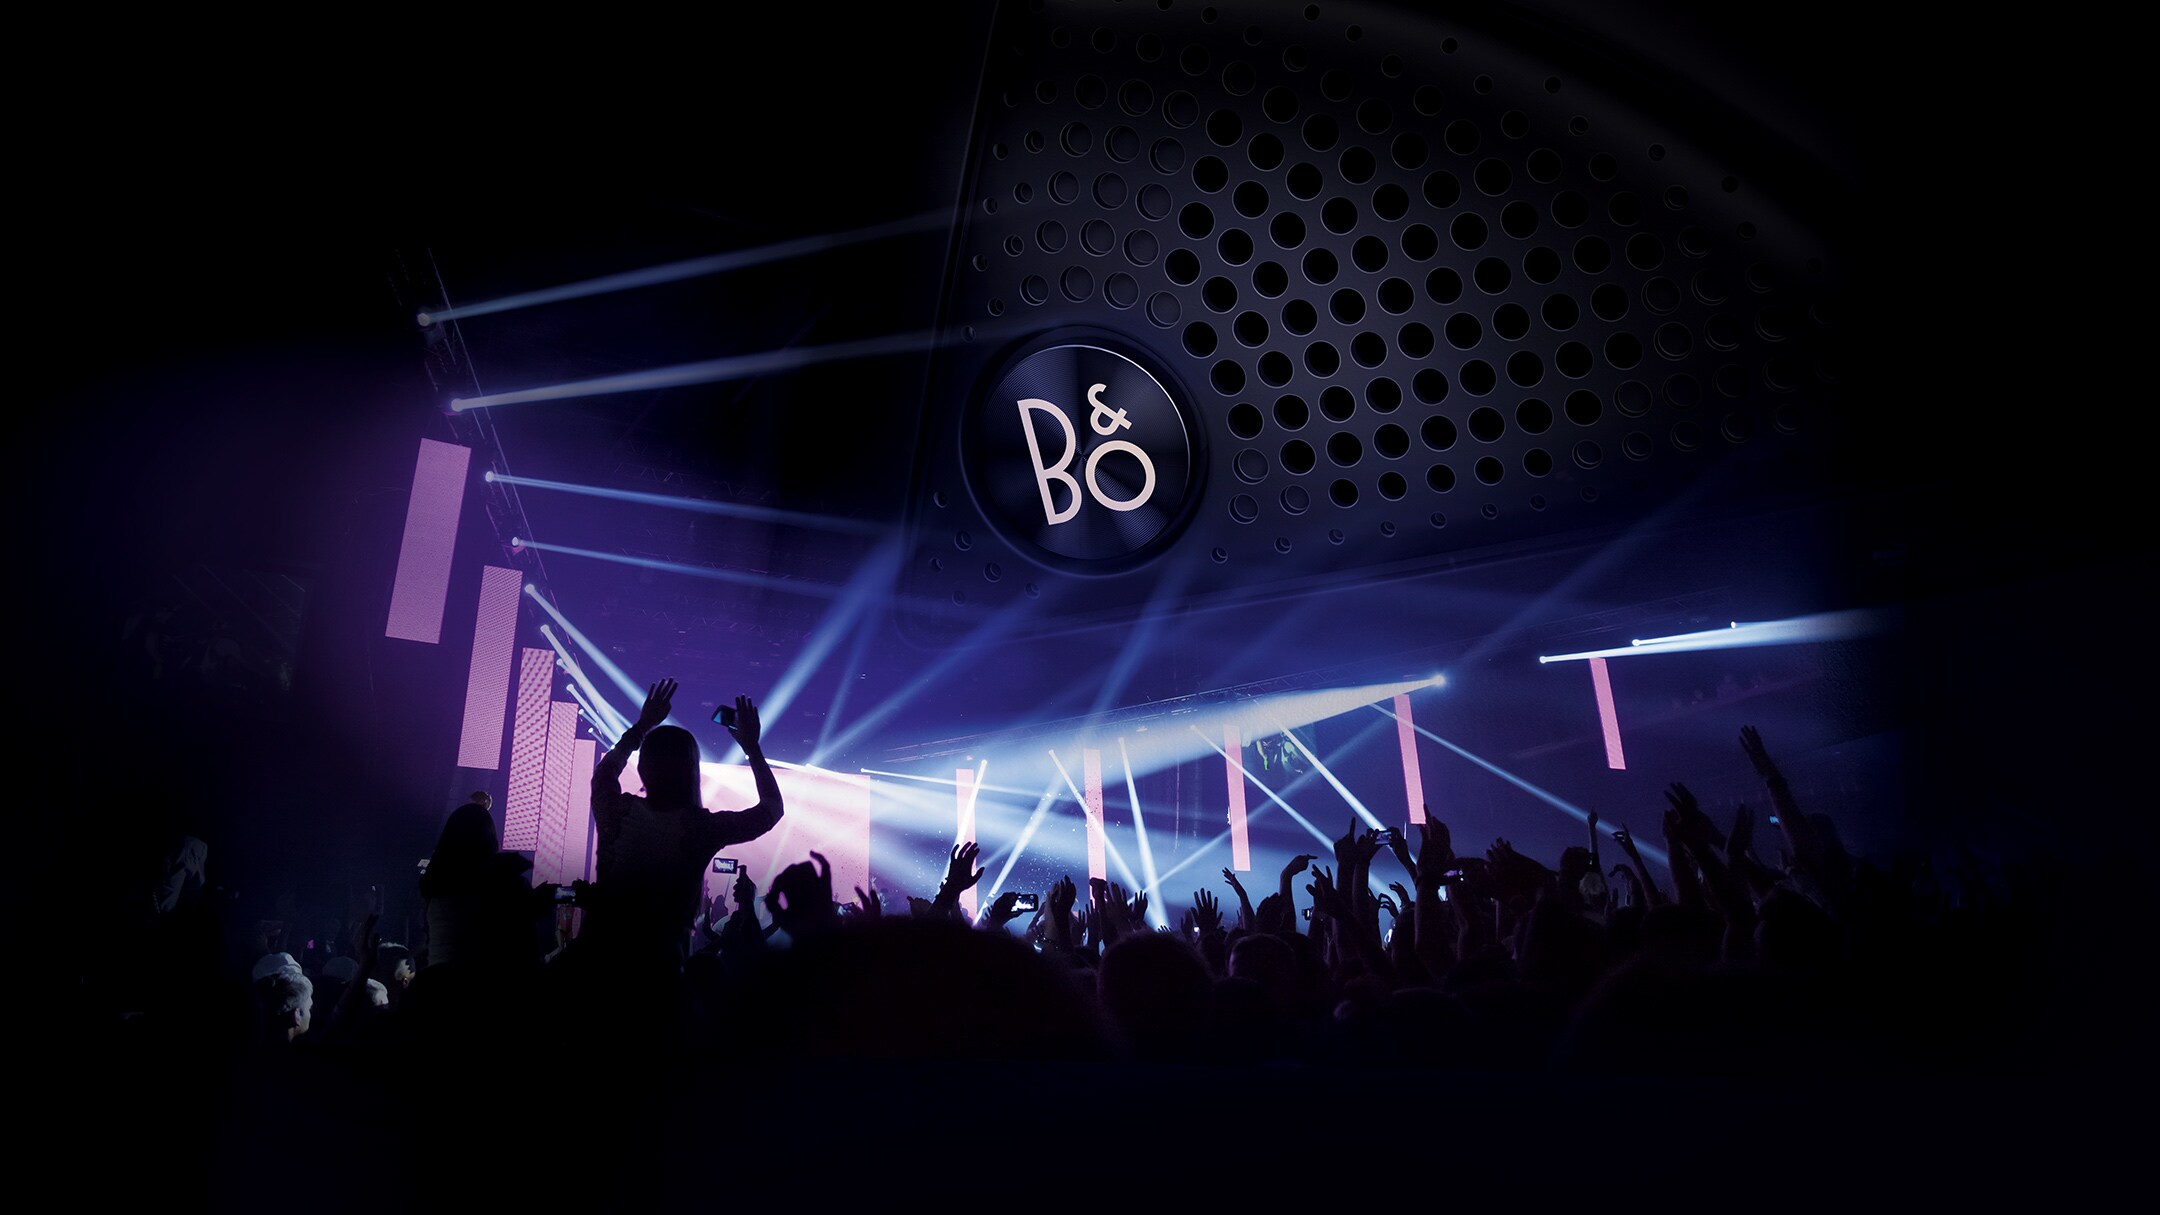 Live venue with B&O logo